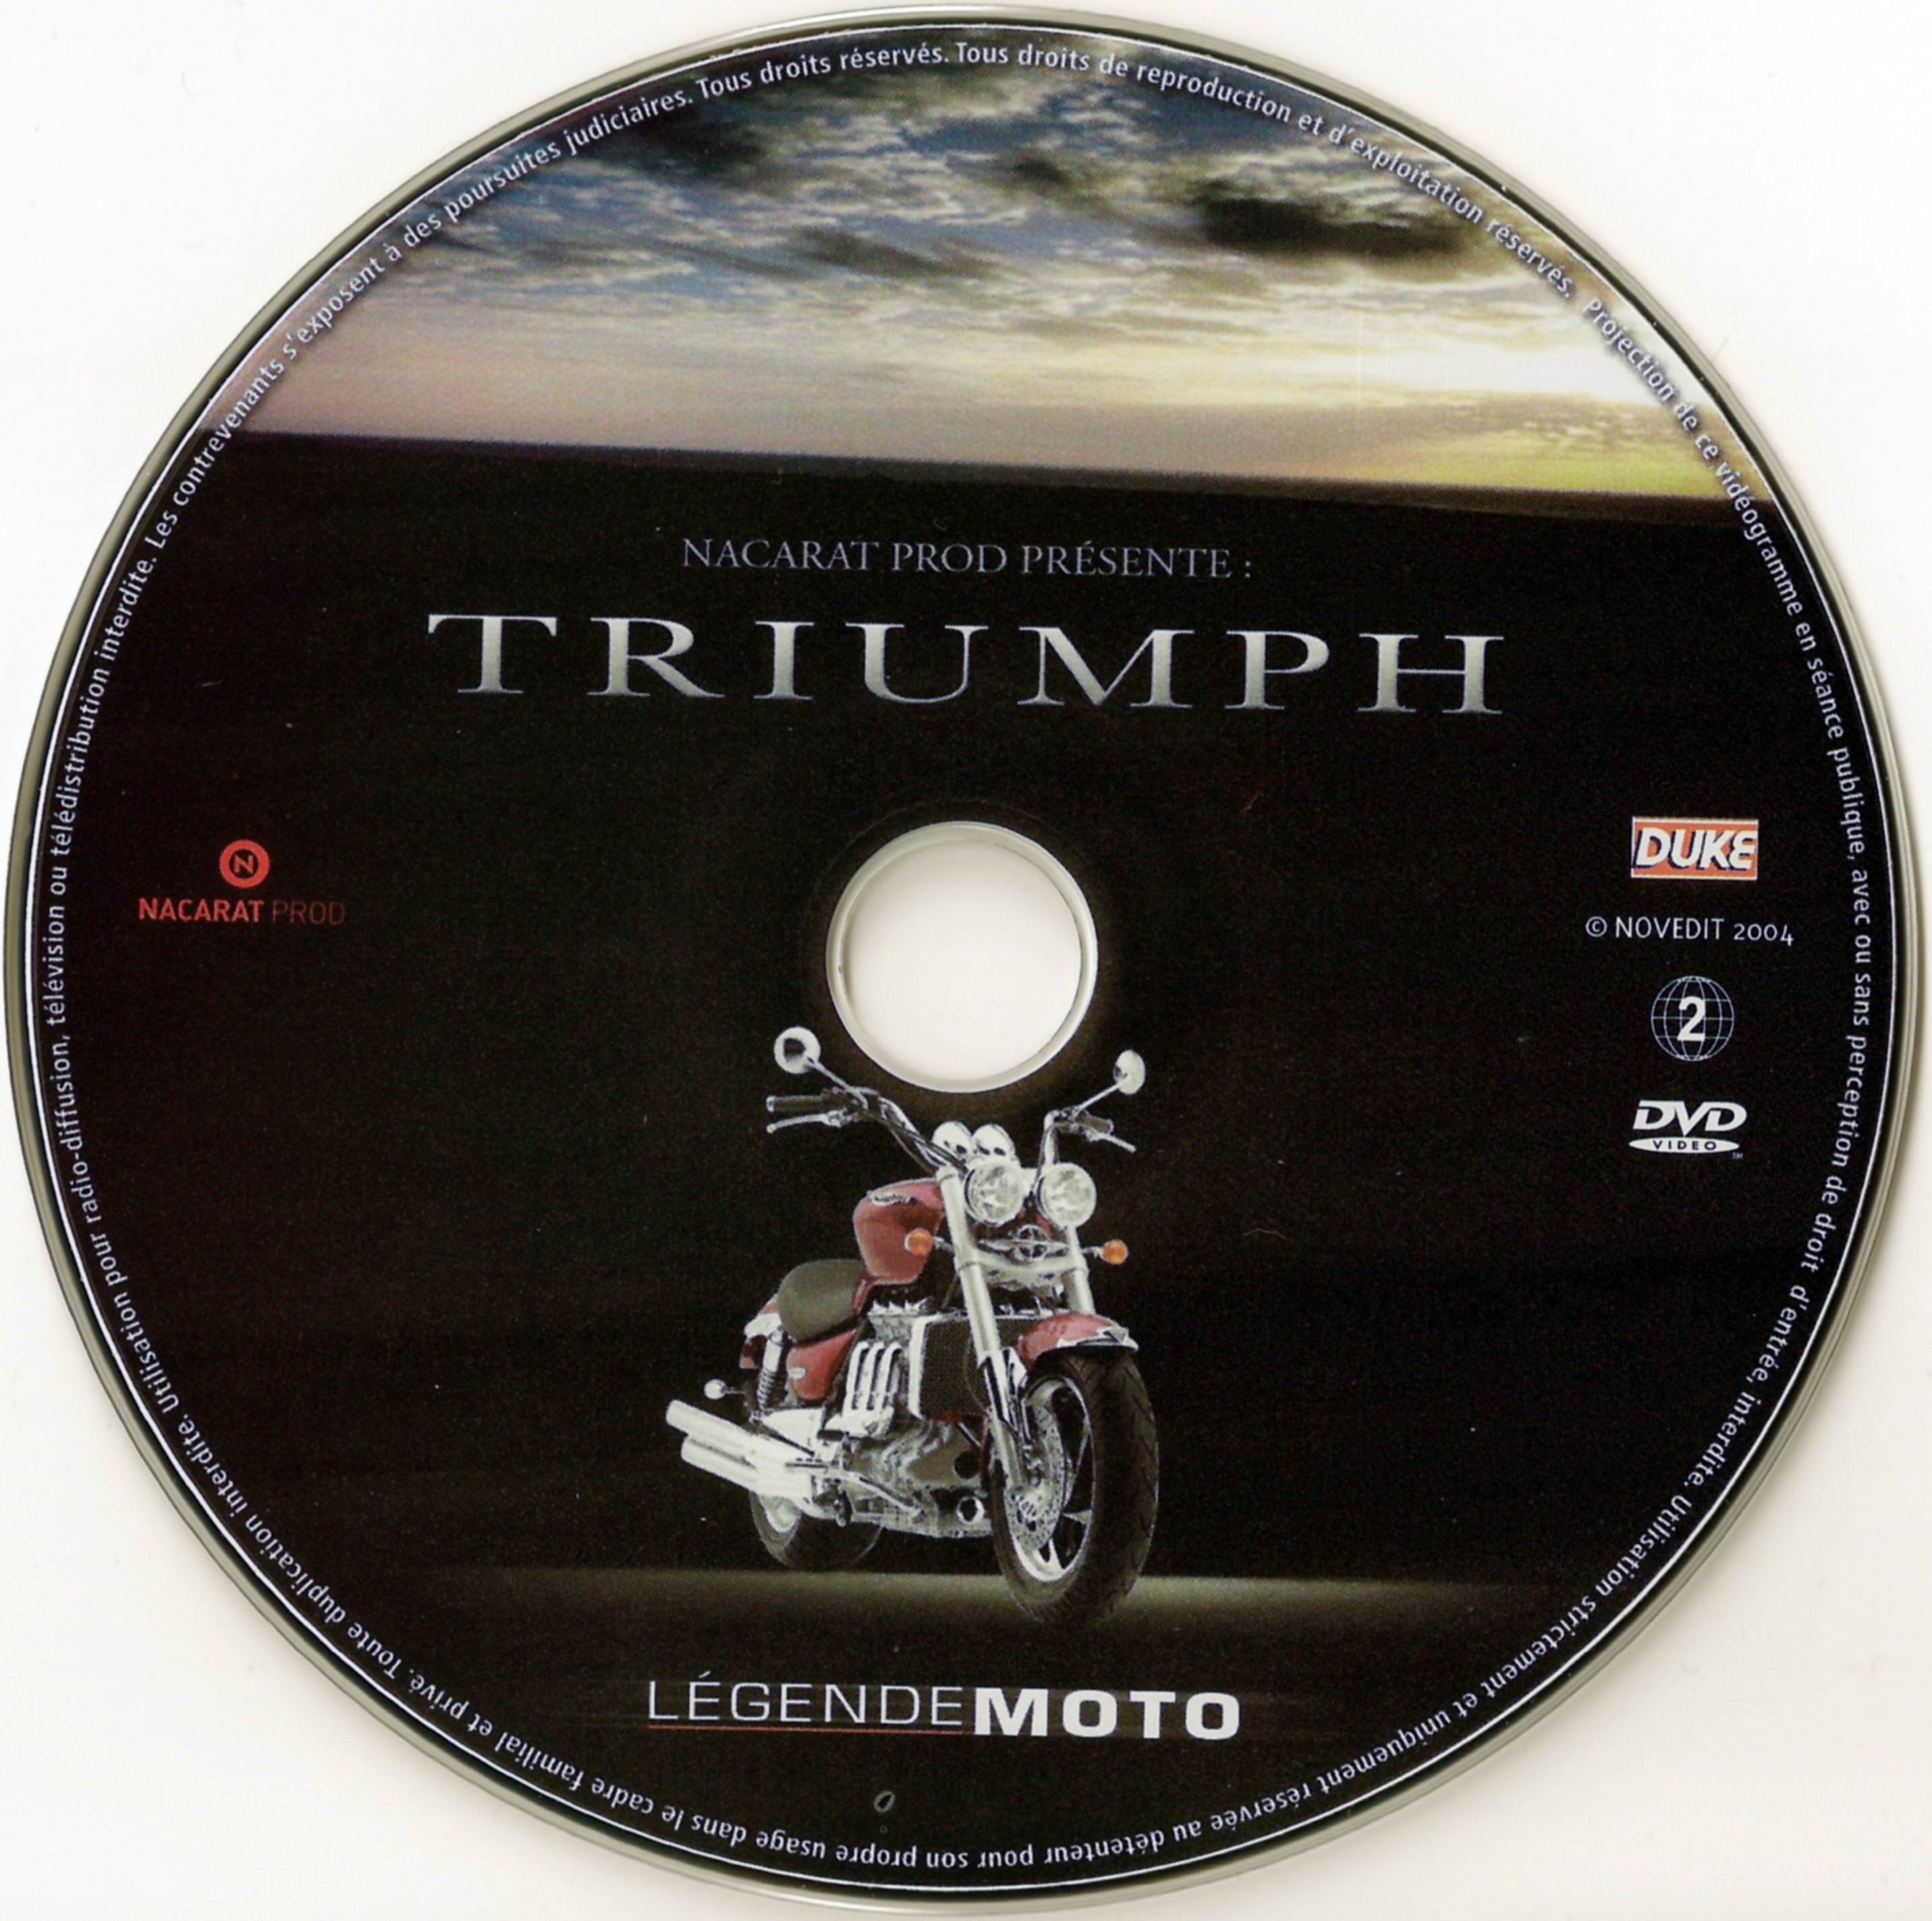 Triumph legende moto